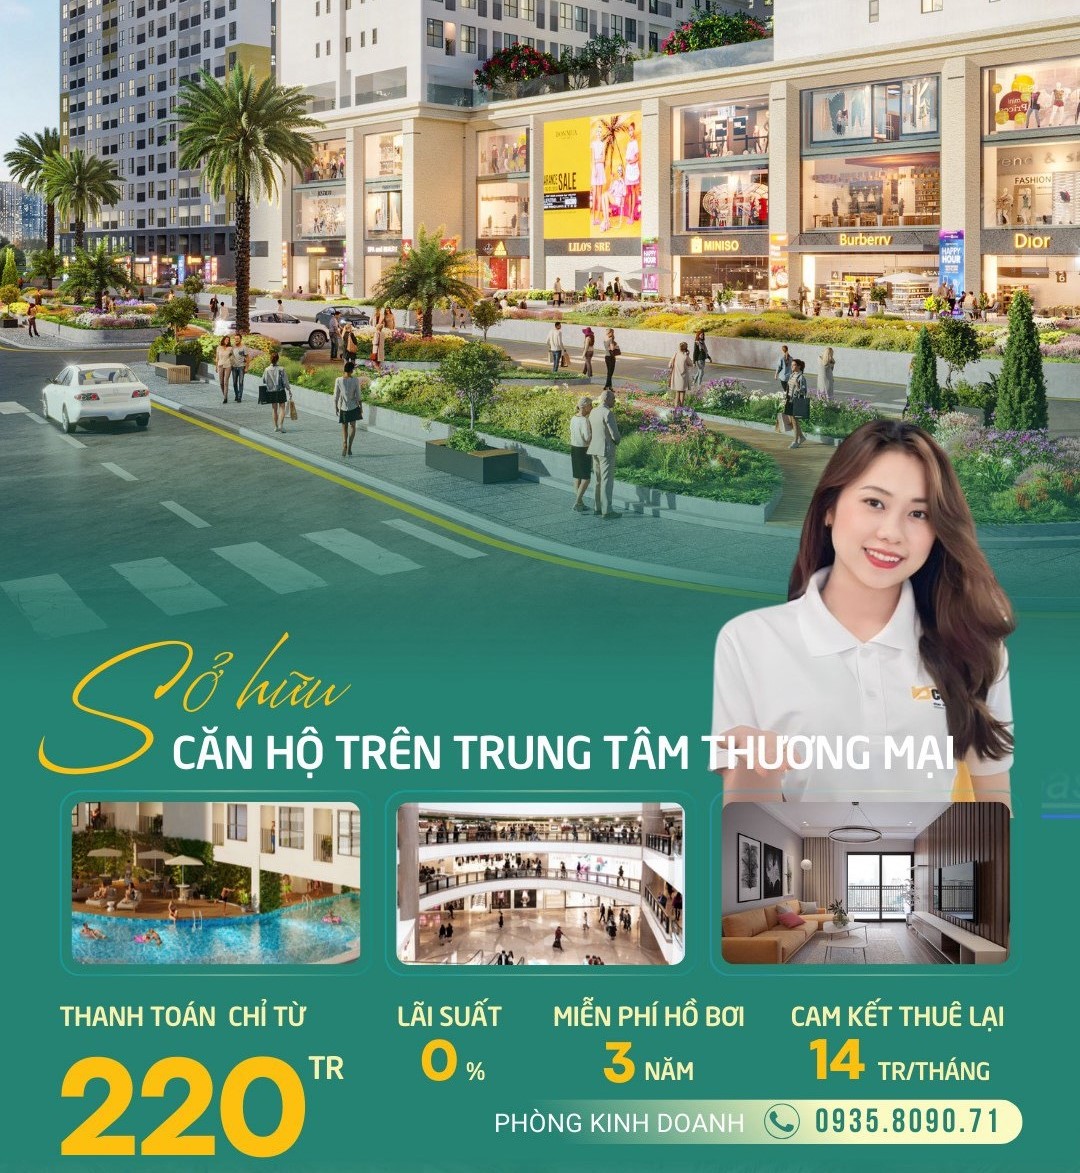 Chuong Trinh Ban Hang Bcons City Cam Ket Thue Lai